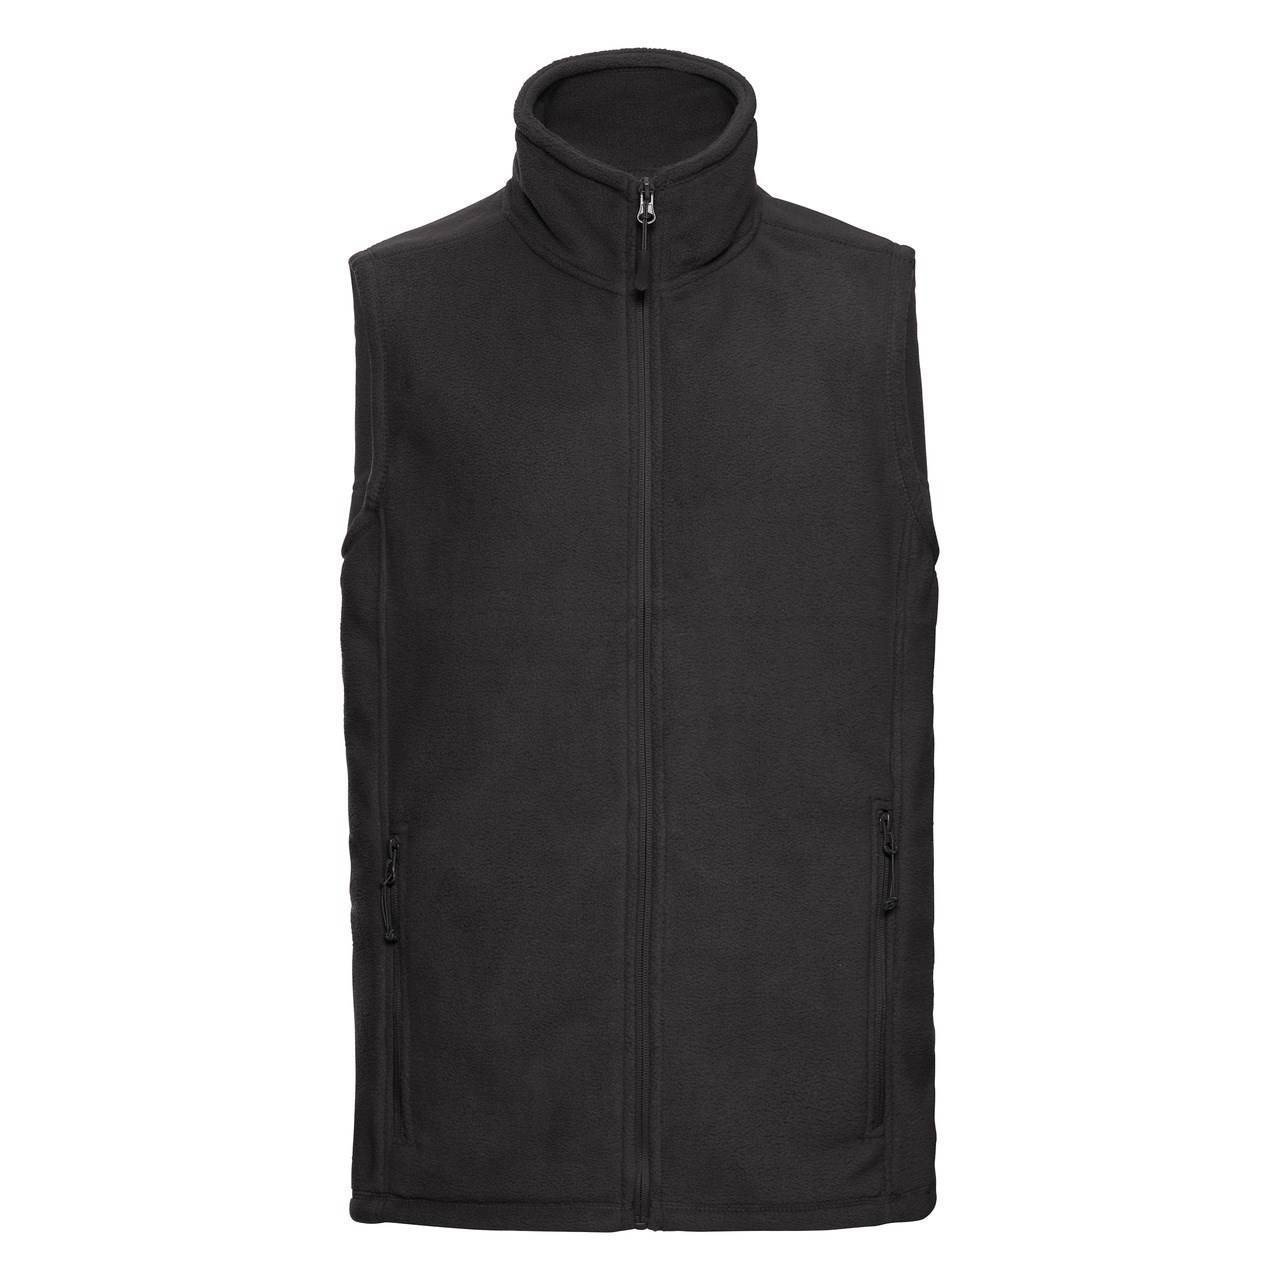 Levně Men's fleece vest 100% polyester, non-pilling fleece 320g